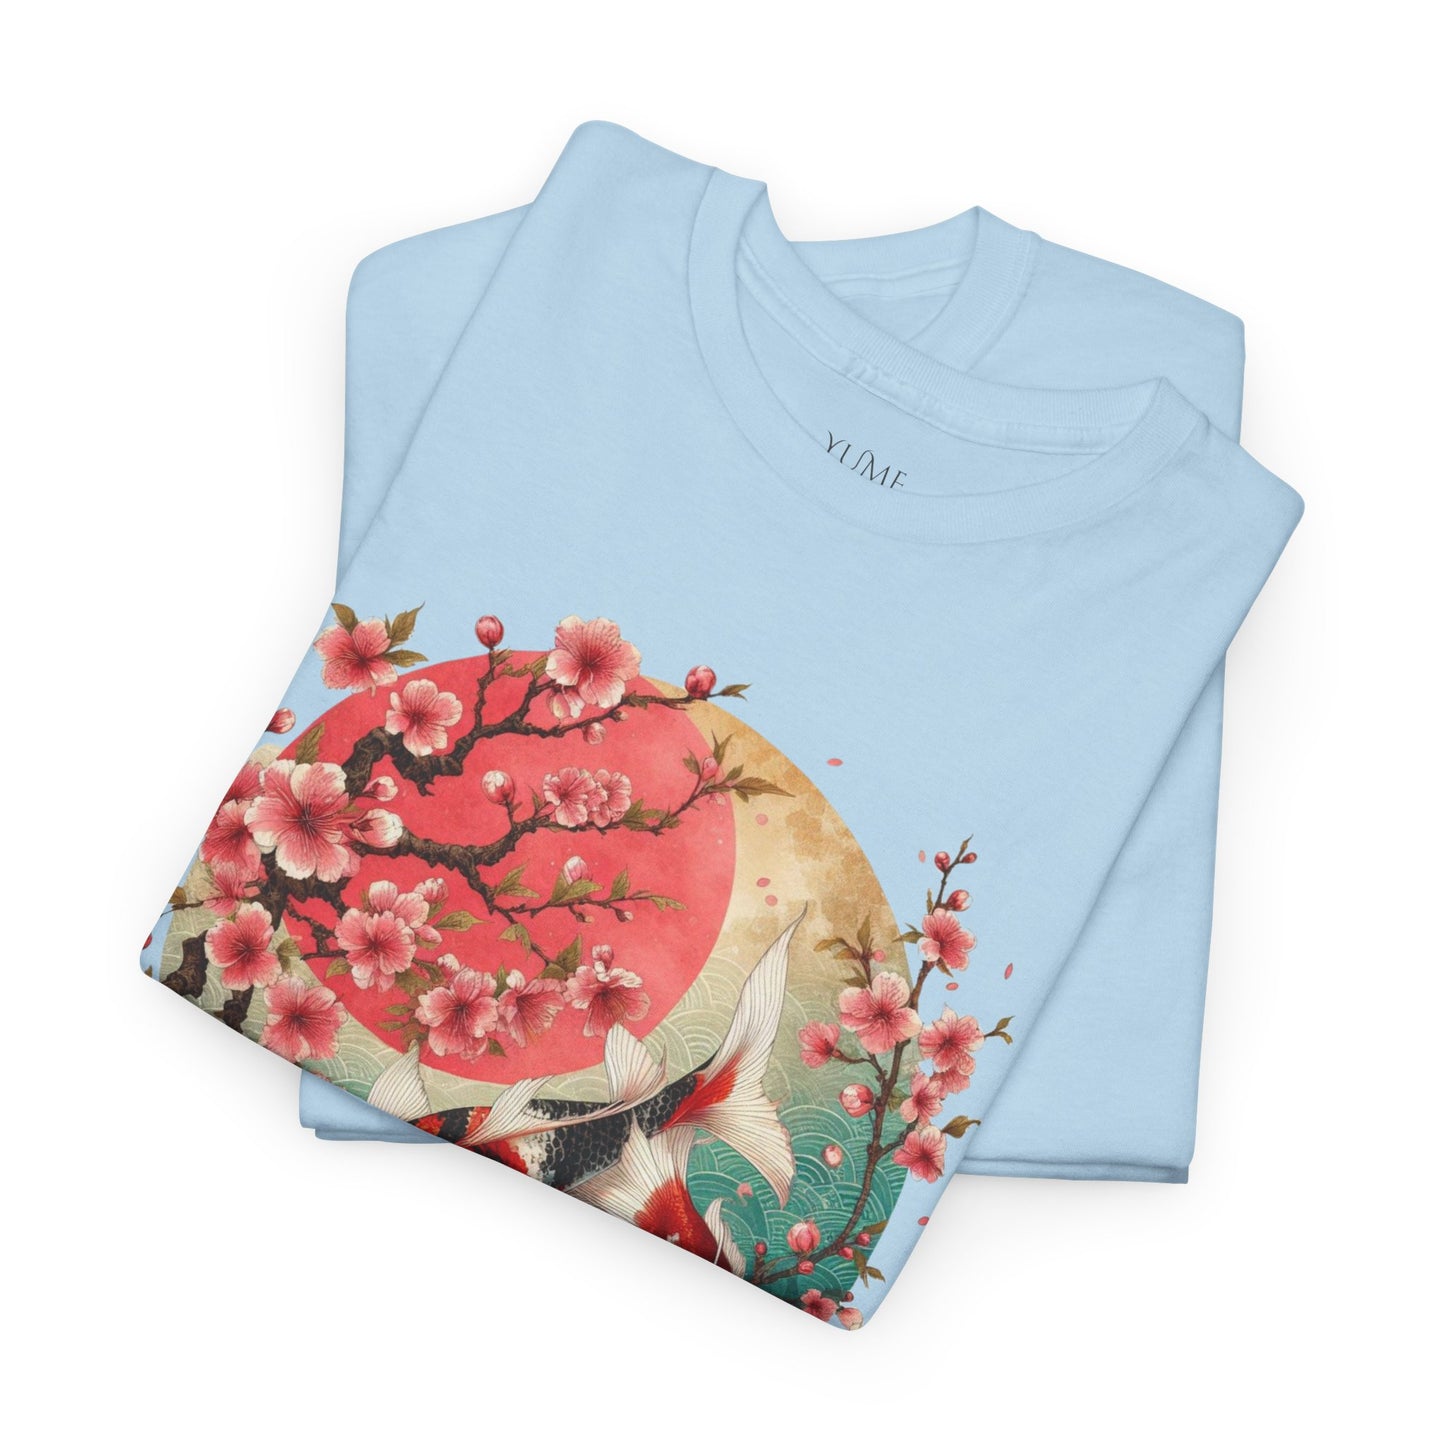 Elegant Koi and Cherry Blossom T-Shirt